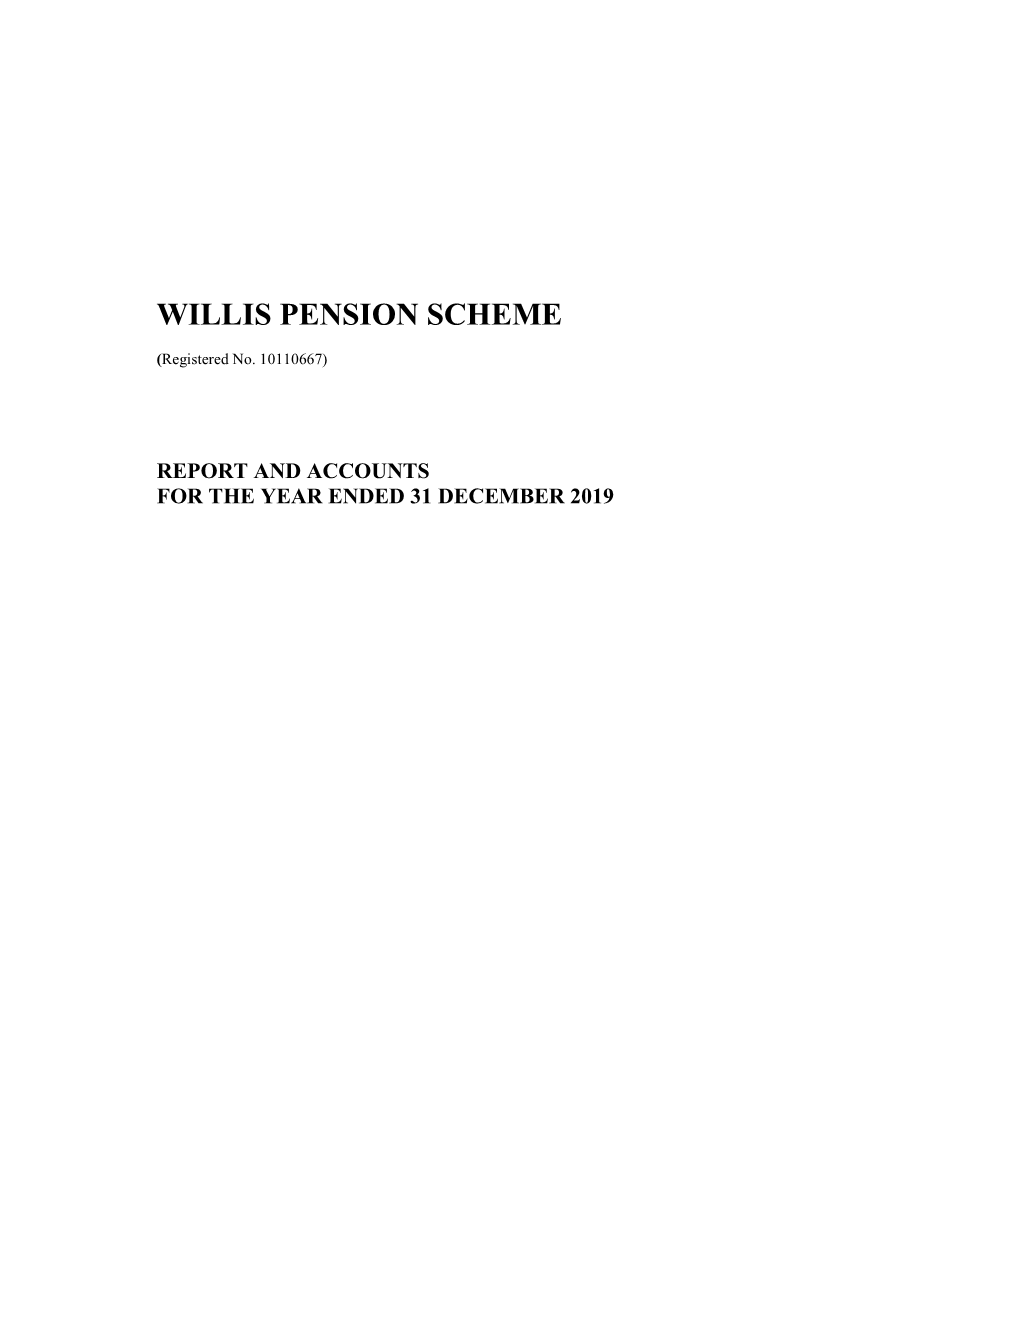 Willis Pension Scheme